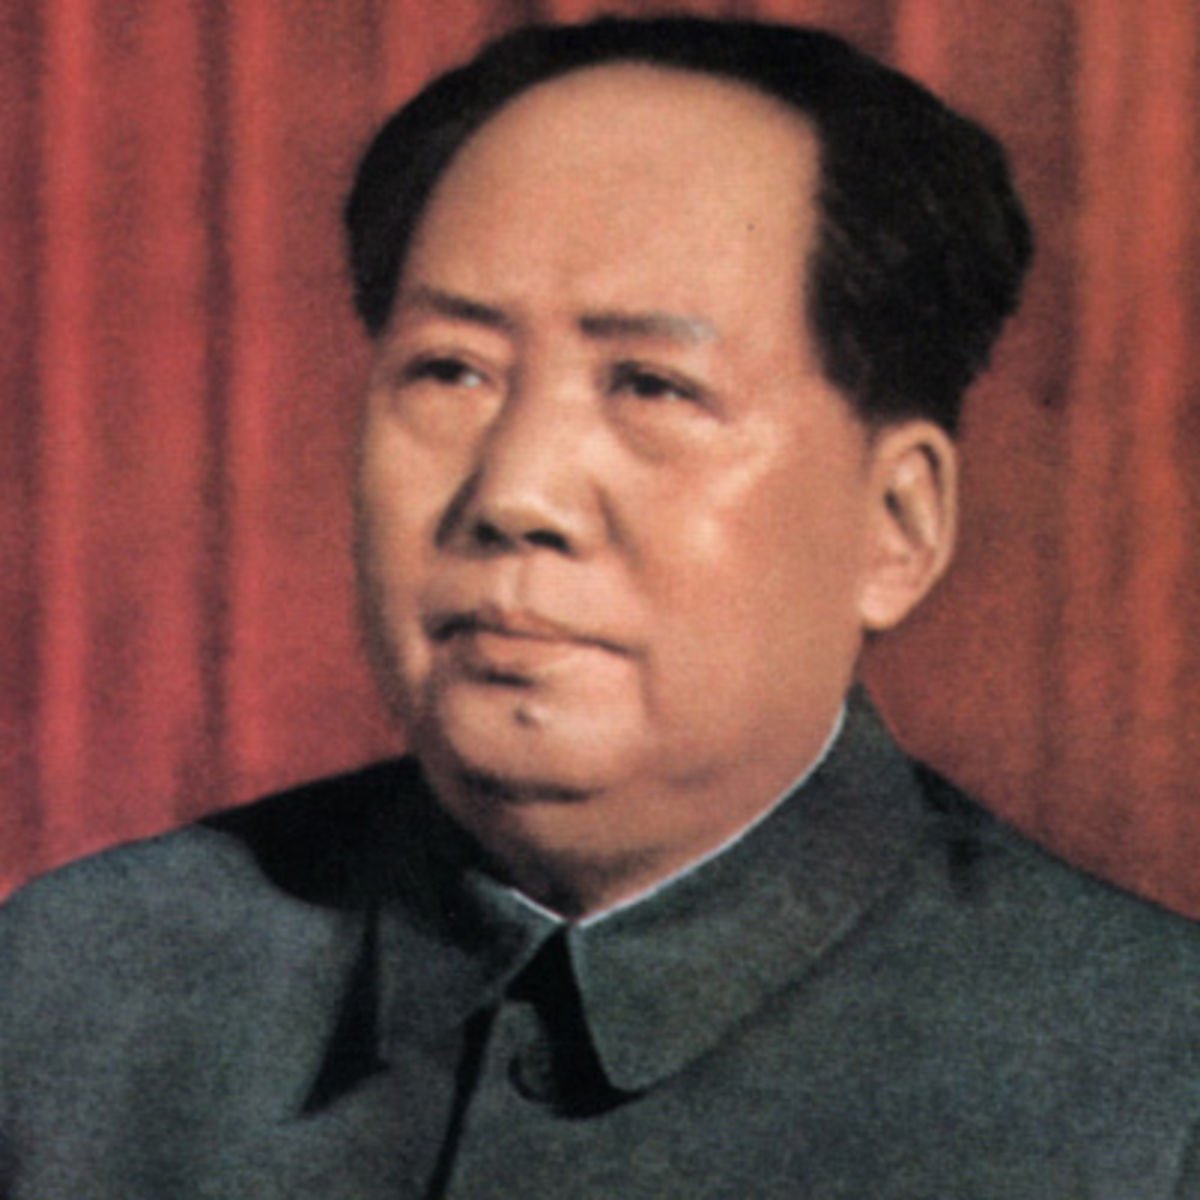 in'de Mao'ya ''eytan'' diyen yetkili grevden alnd